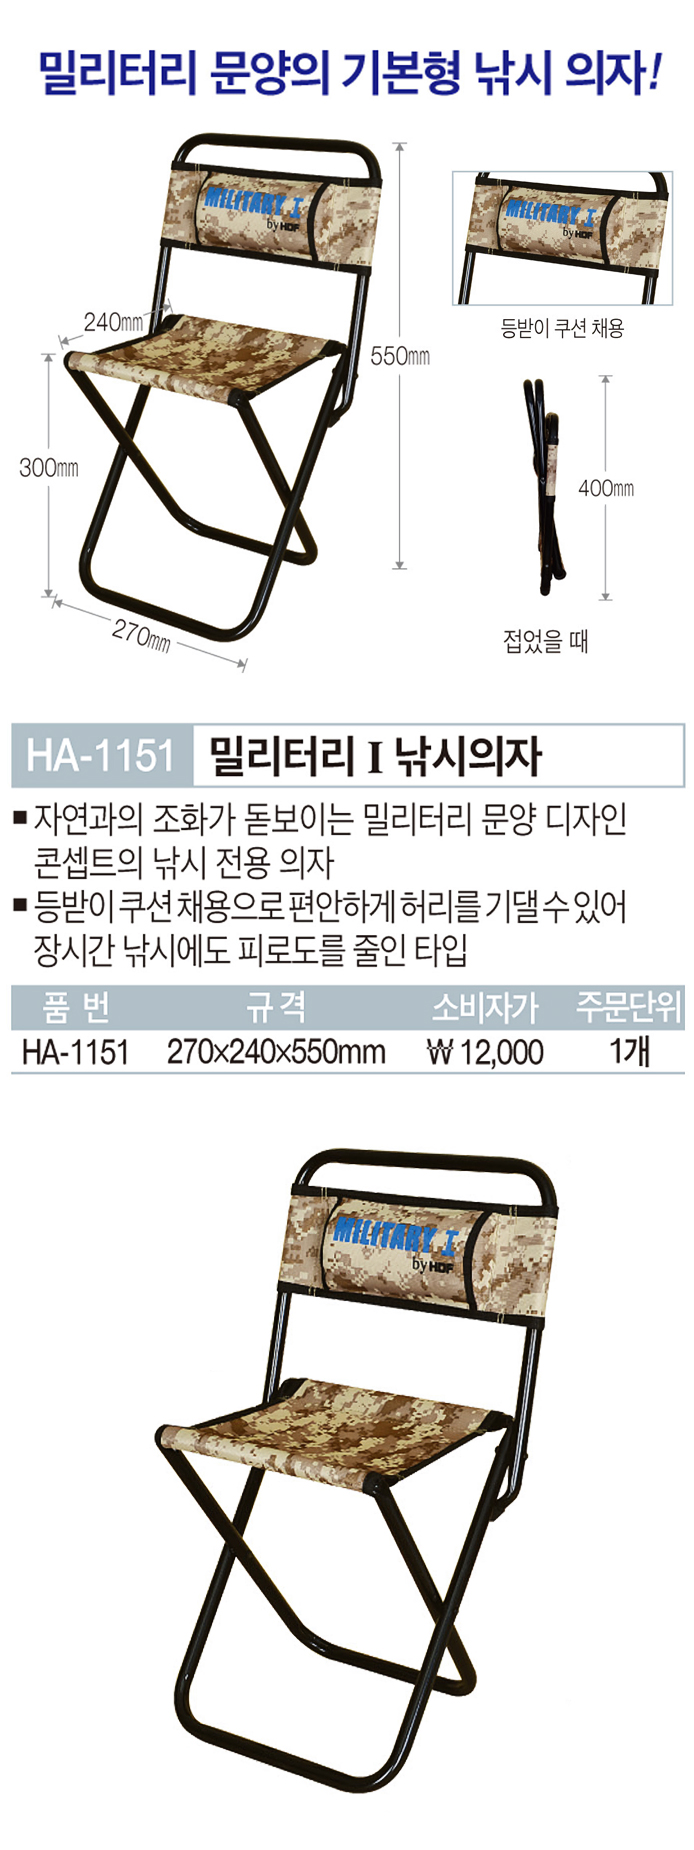 해동 밀리터리1 낚시의자 HA-1151